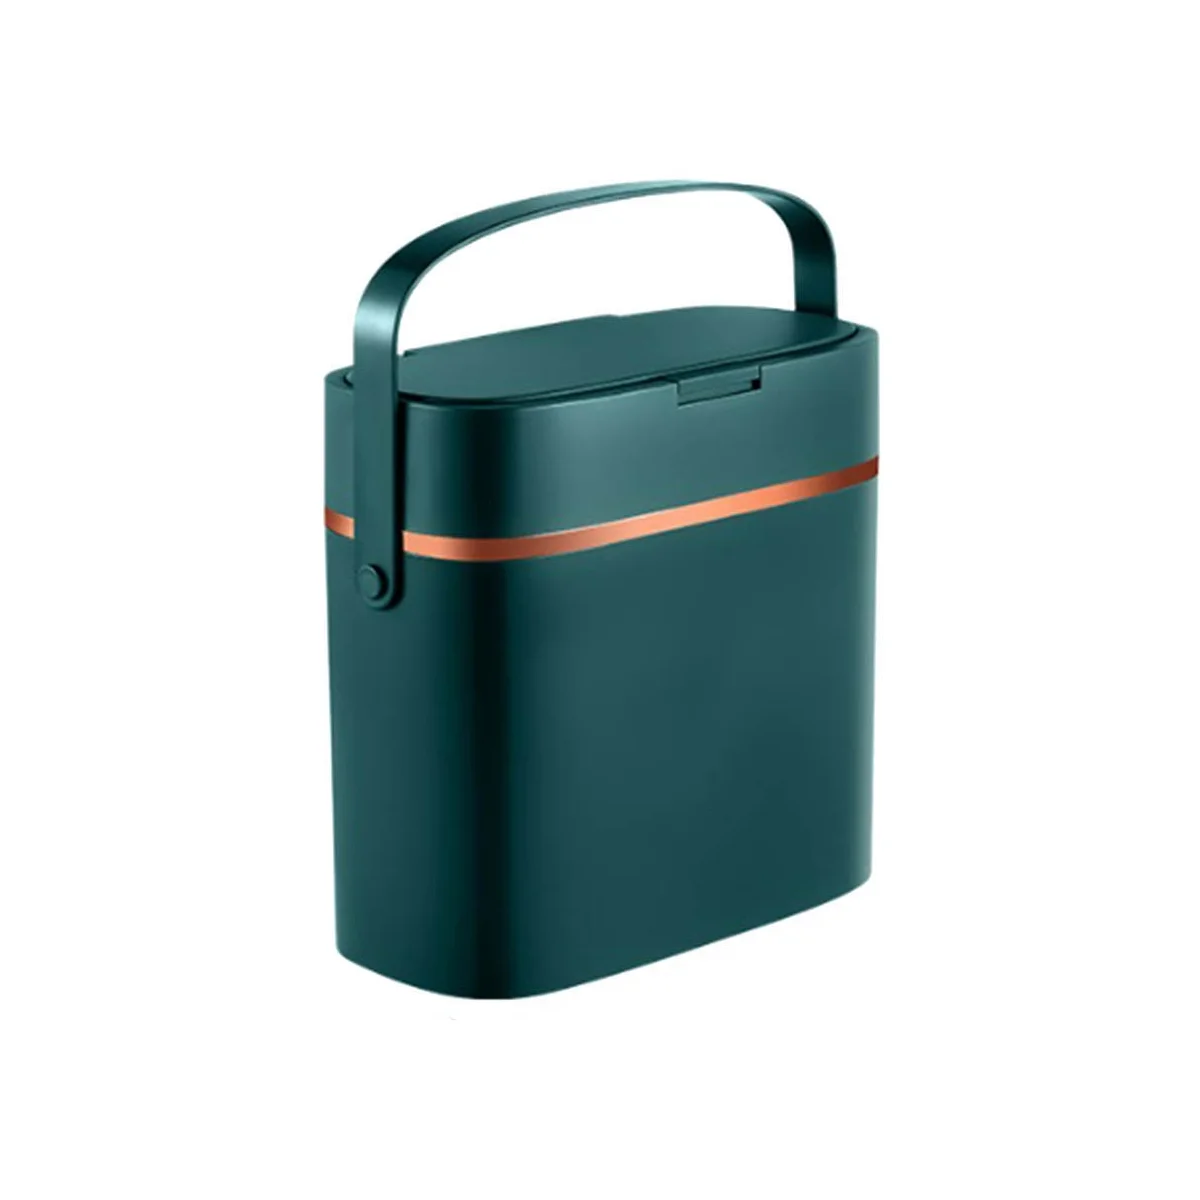 

Маленькая мусорная корзина объемом 16 литров с крышкой и ручкой, пластиковая мусорная корзина для спальни/узкая деталь/офис/RV, темно-зеленая